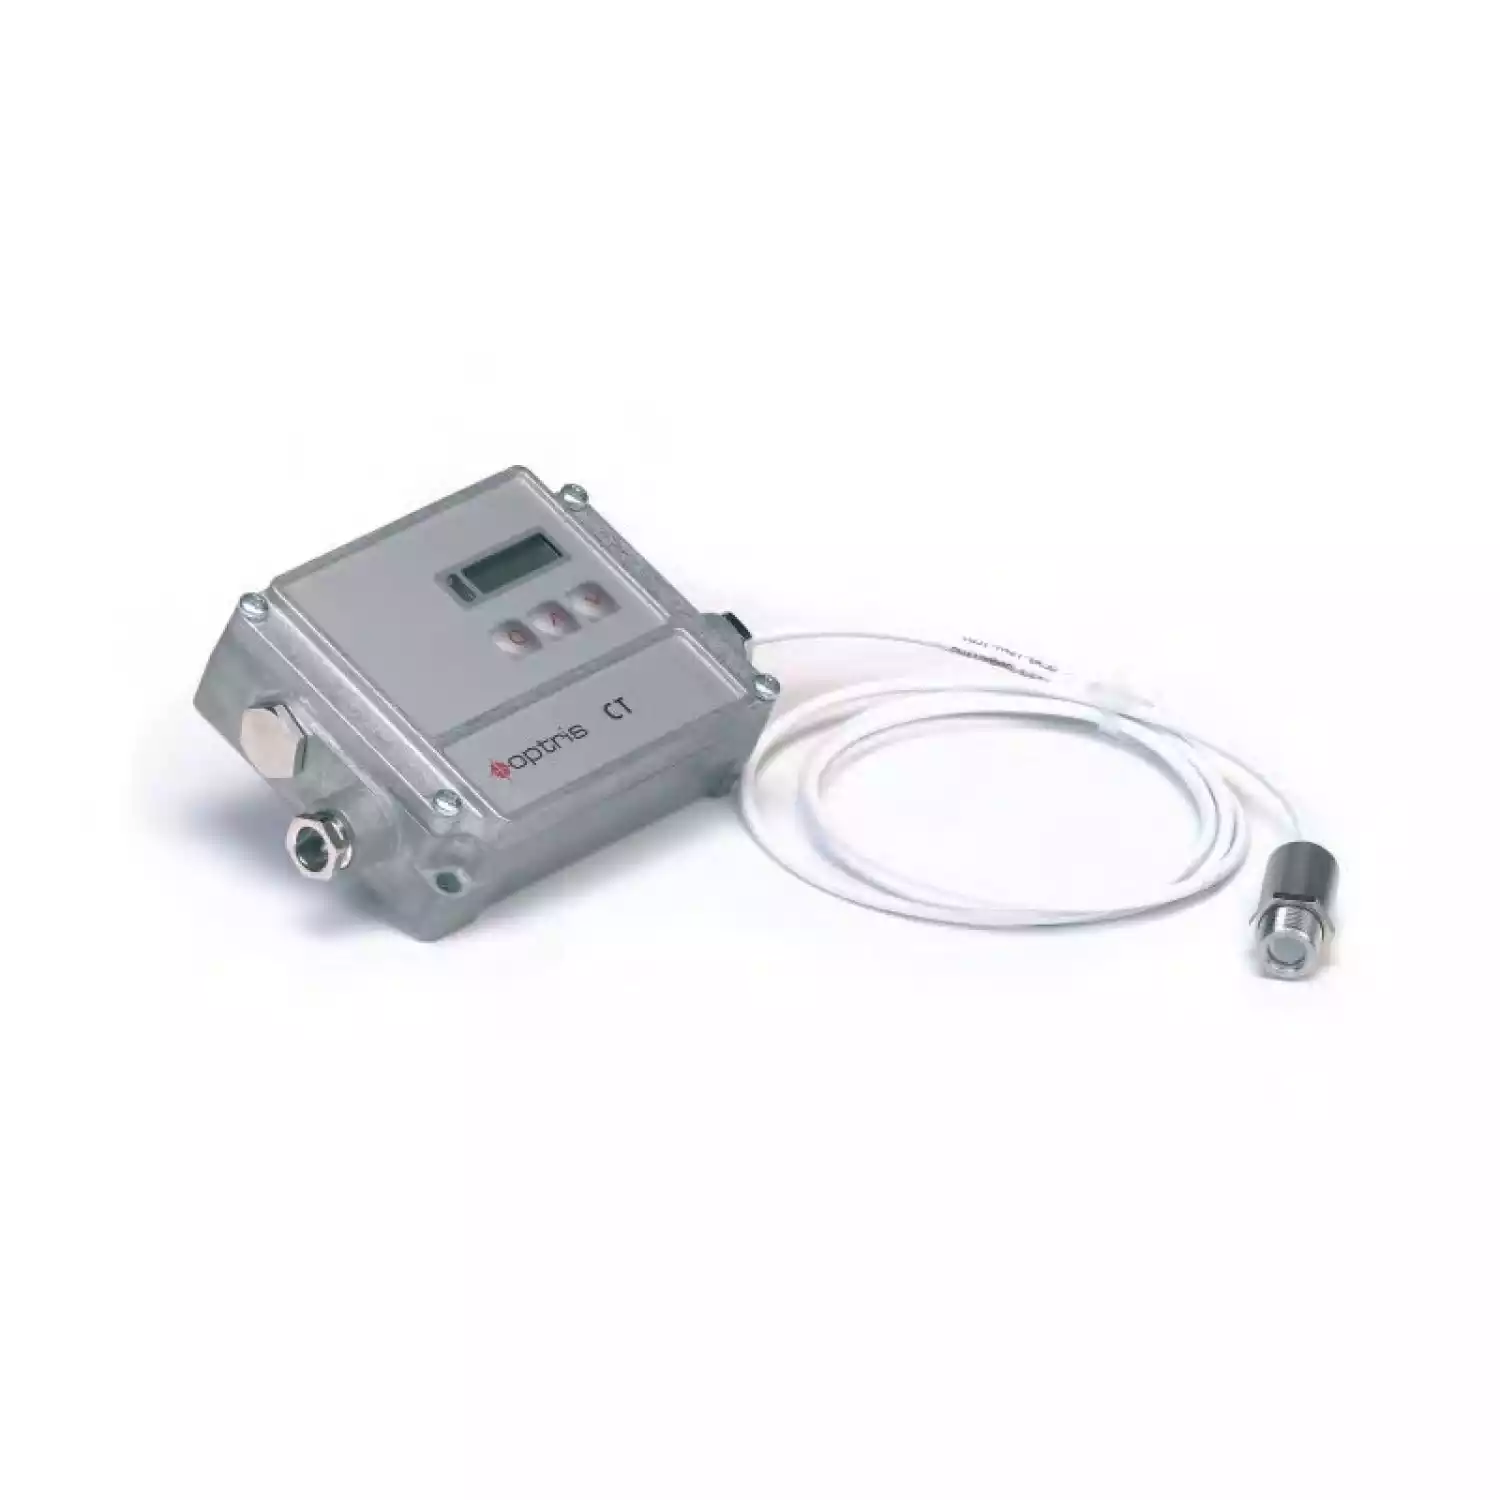 ИК термометр Optris CT 3M - 1